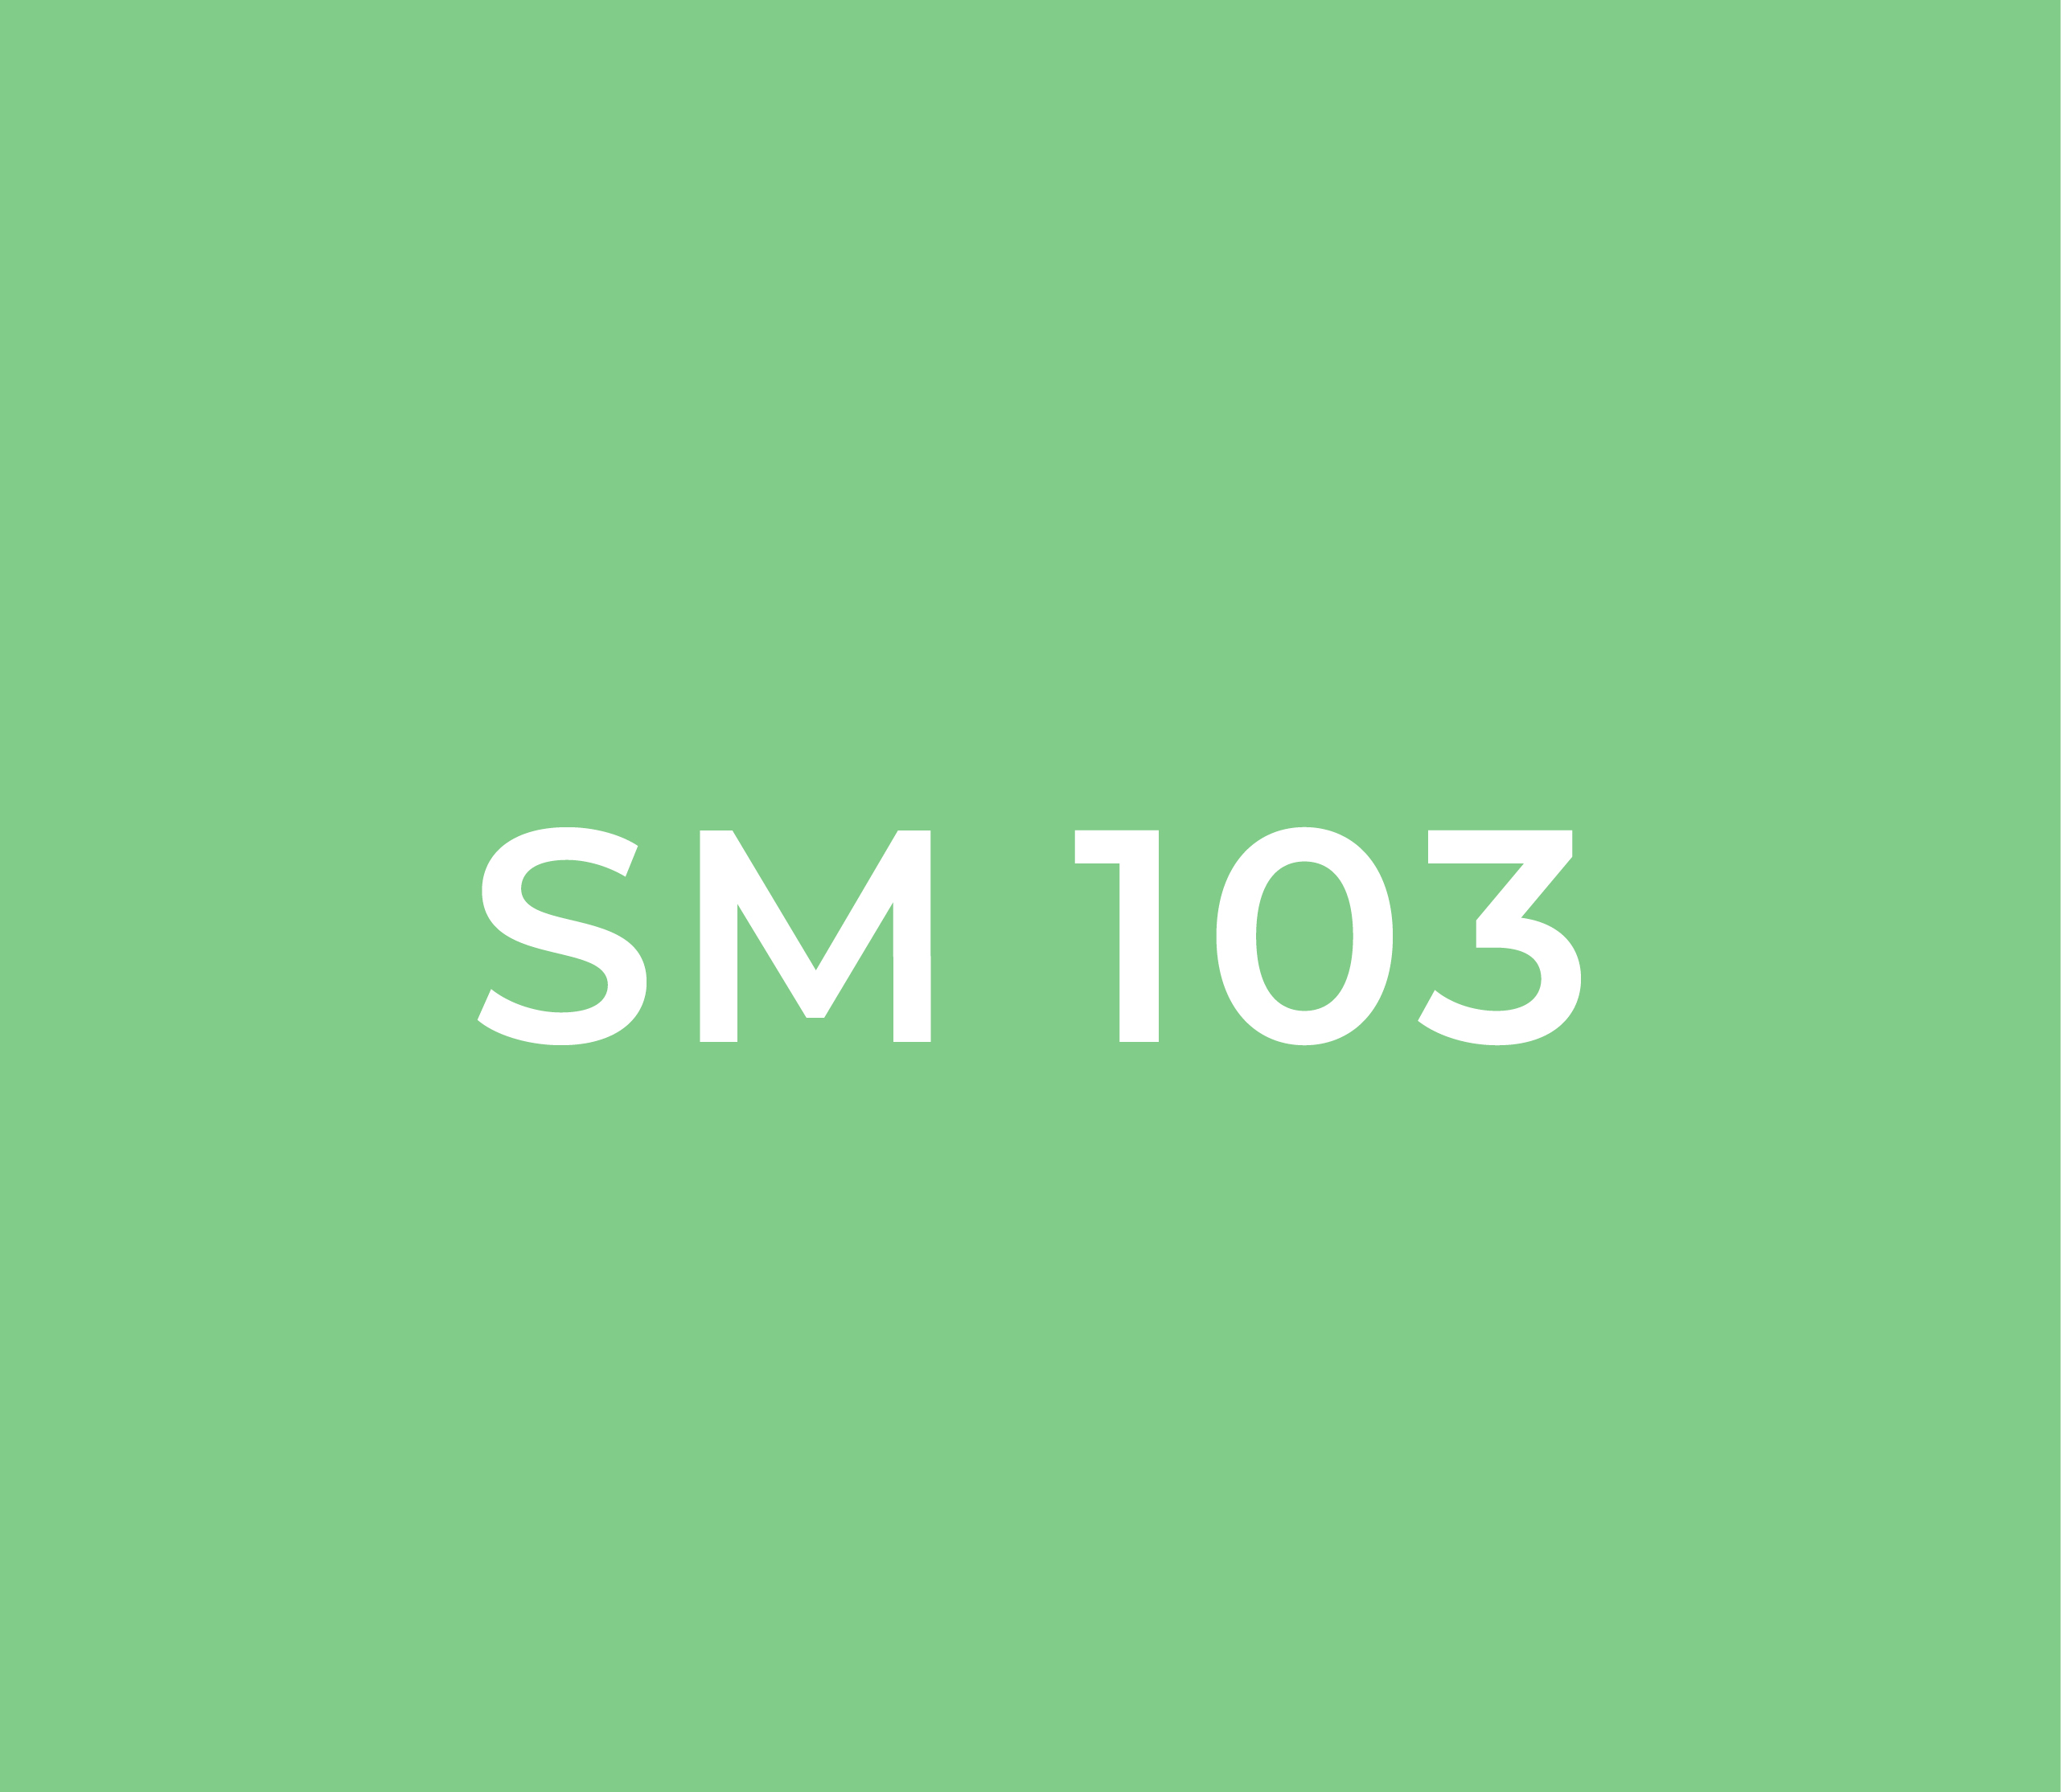 SM 103